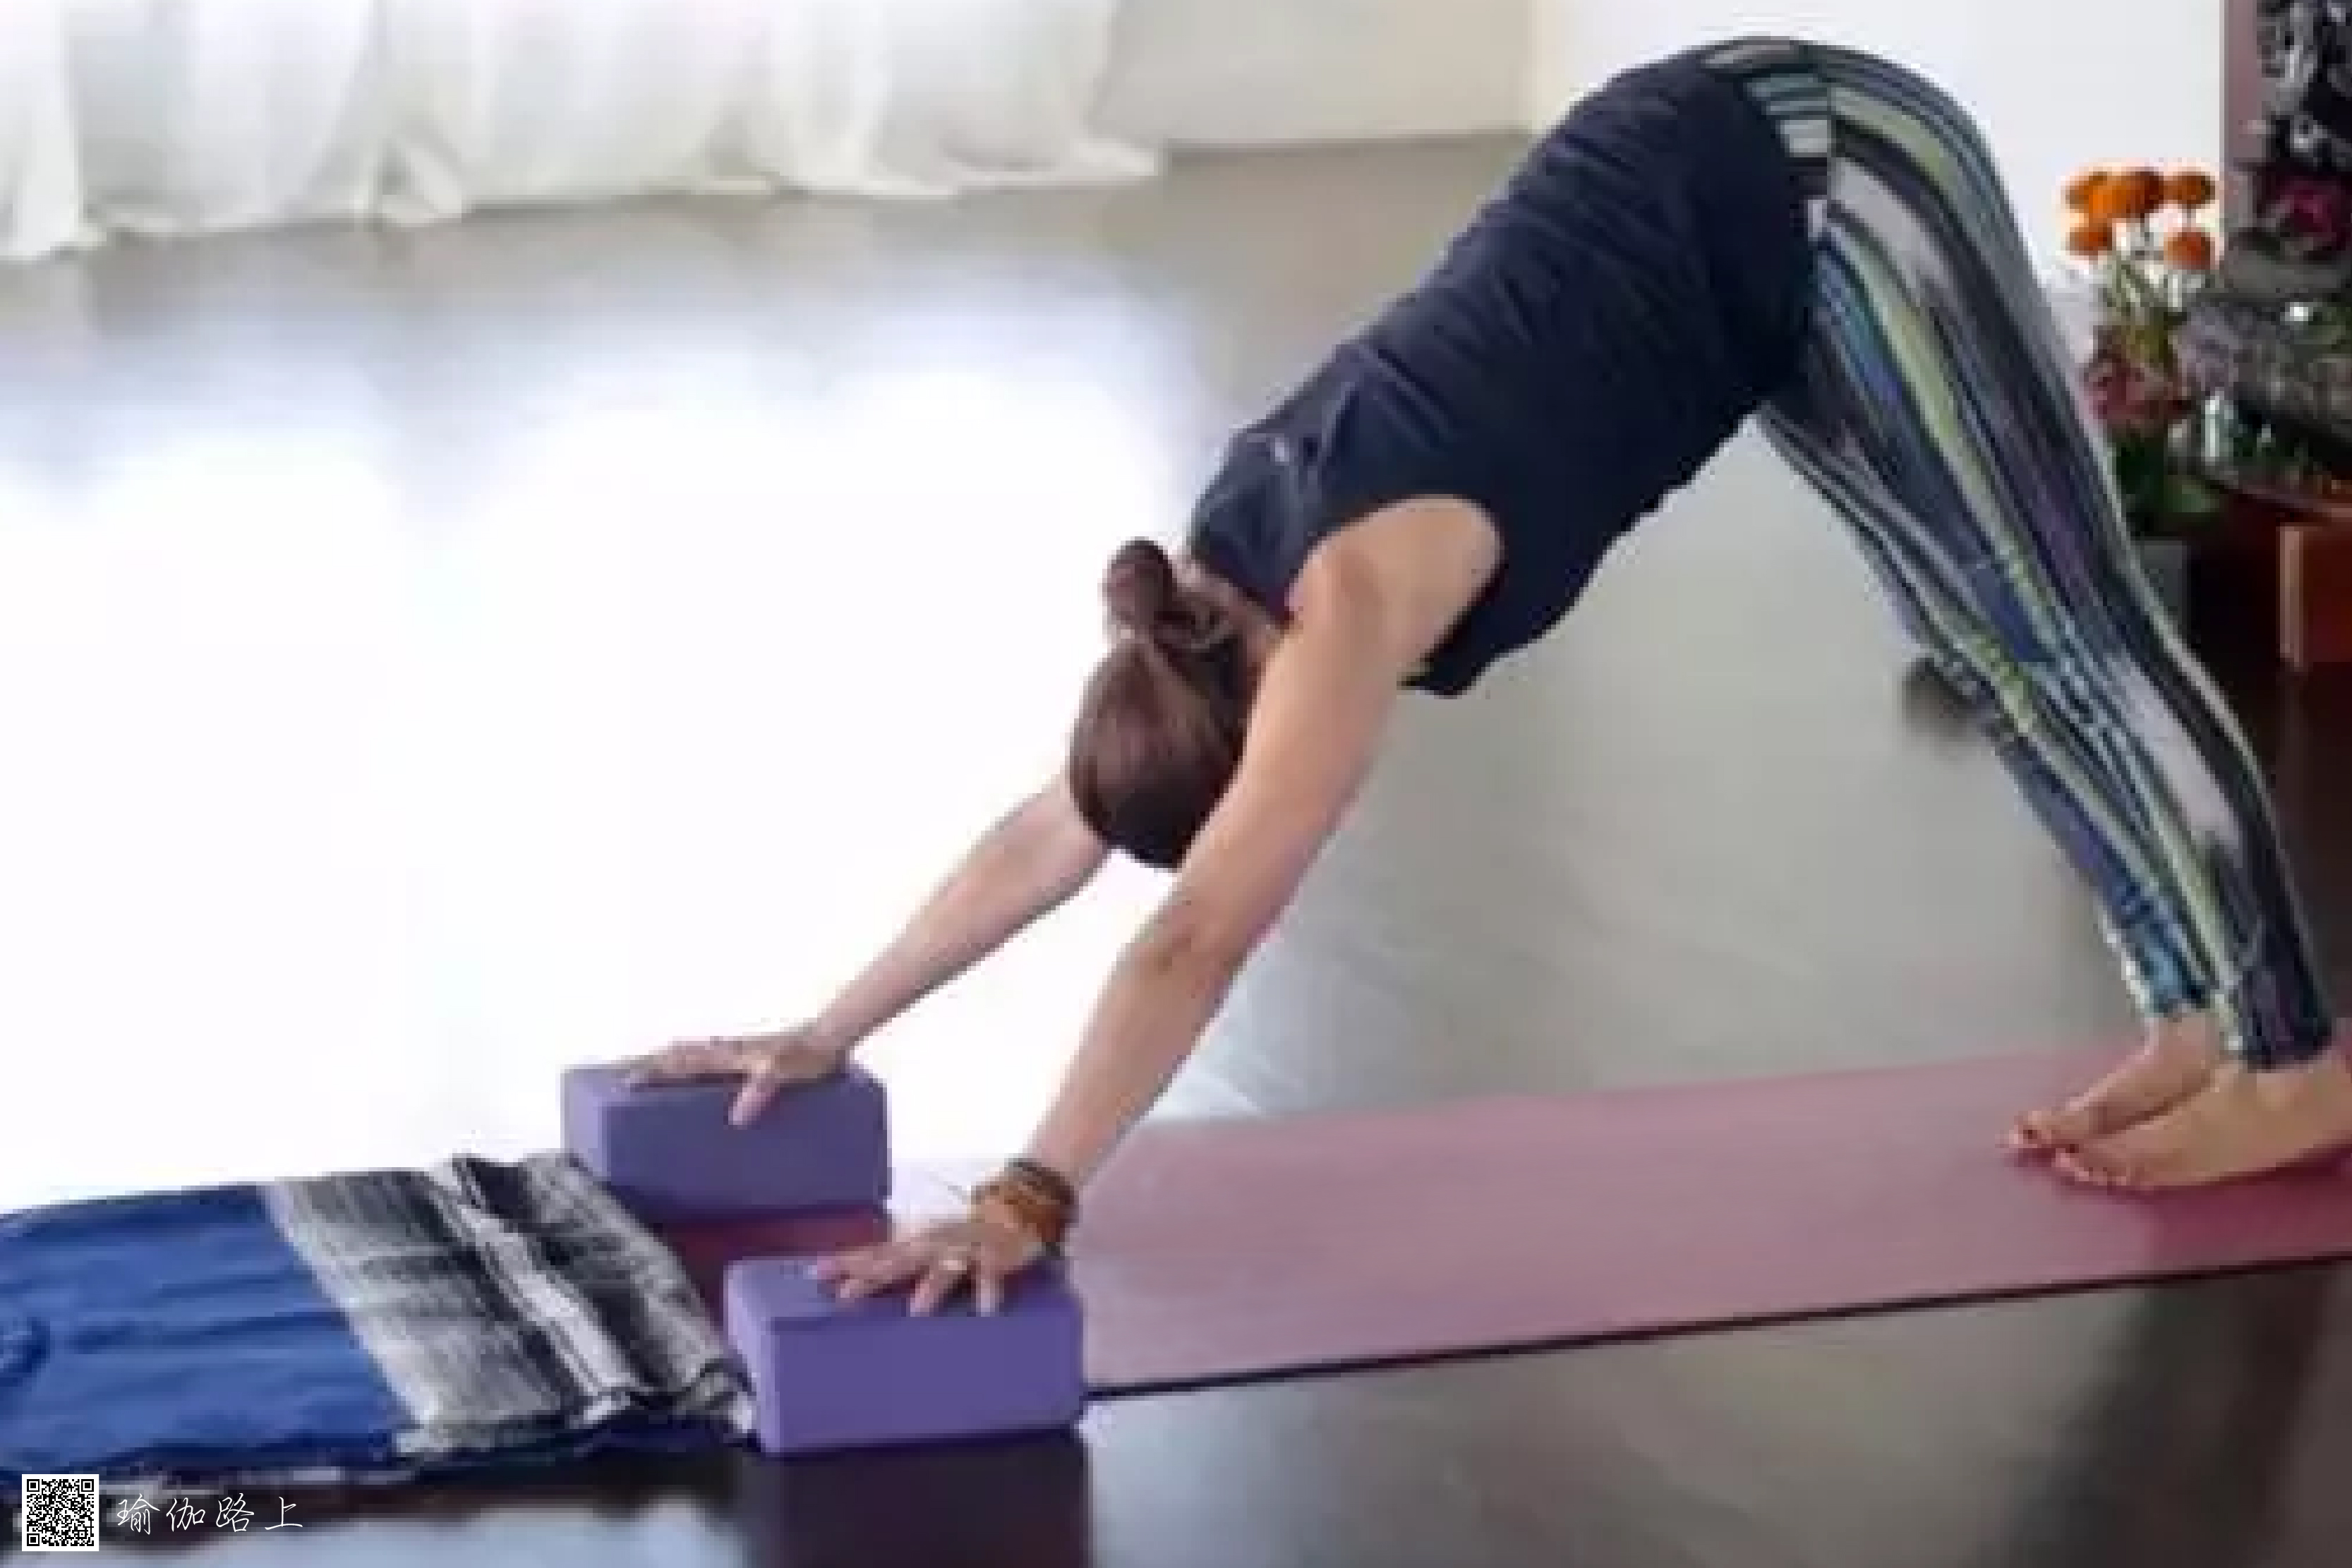 Yoga Blocks Explained & 10 Best Yoga Block Poses